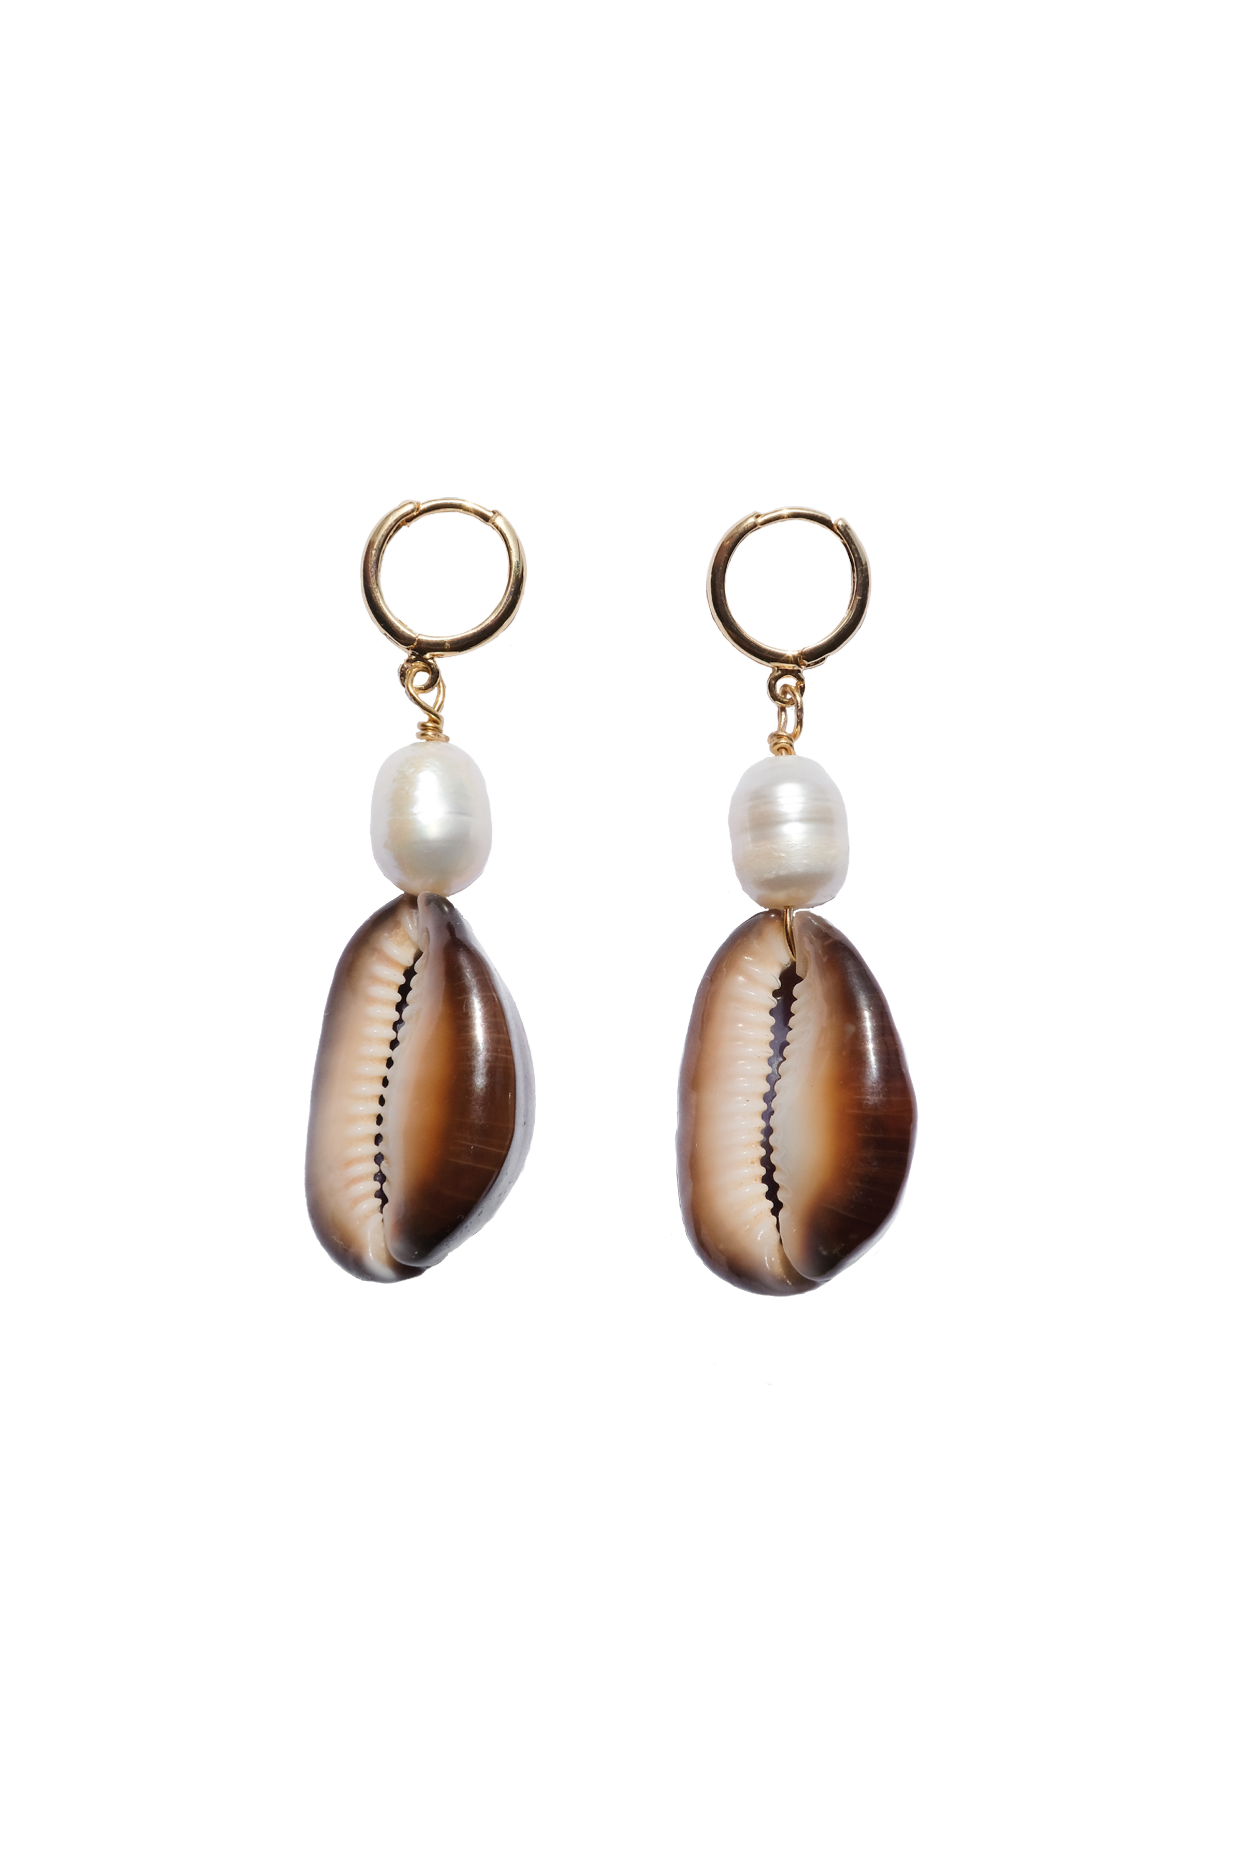 Bora Bora Pearl Earrings